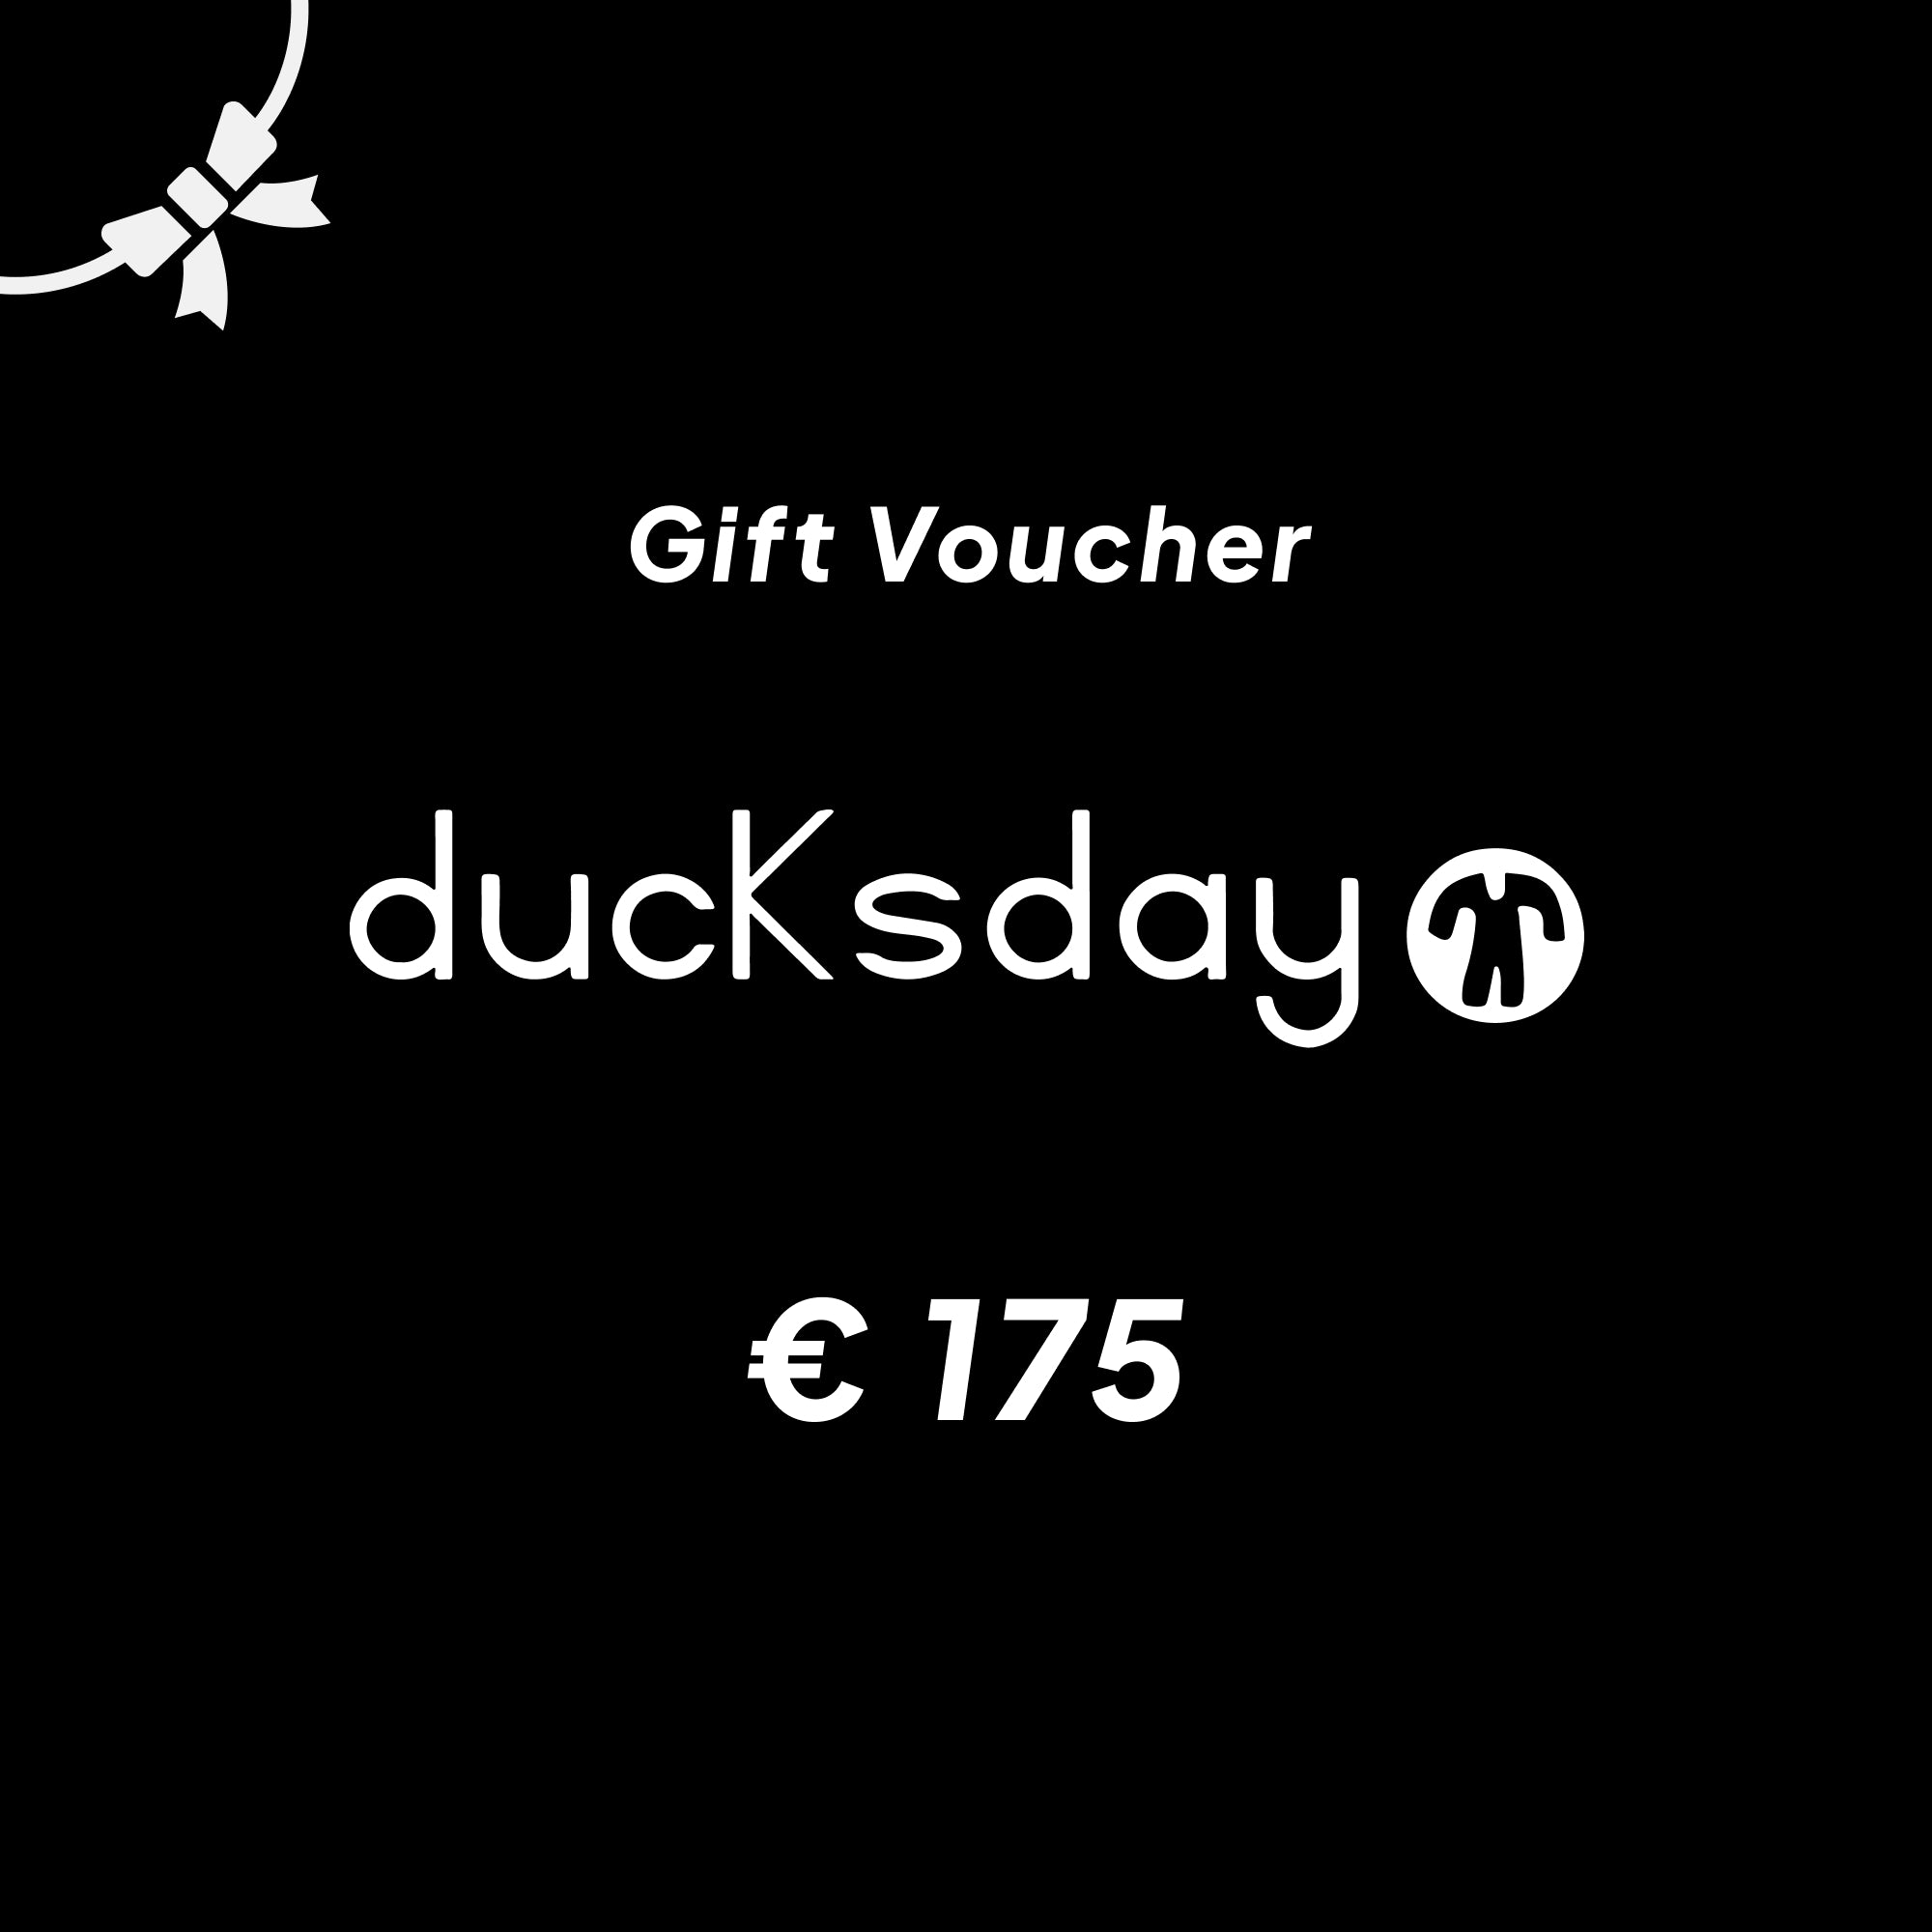 Ducksday-Geschenkgutschein